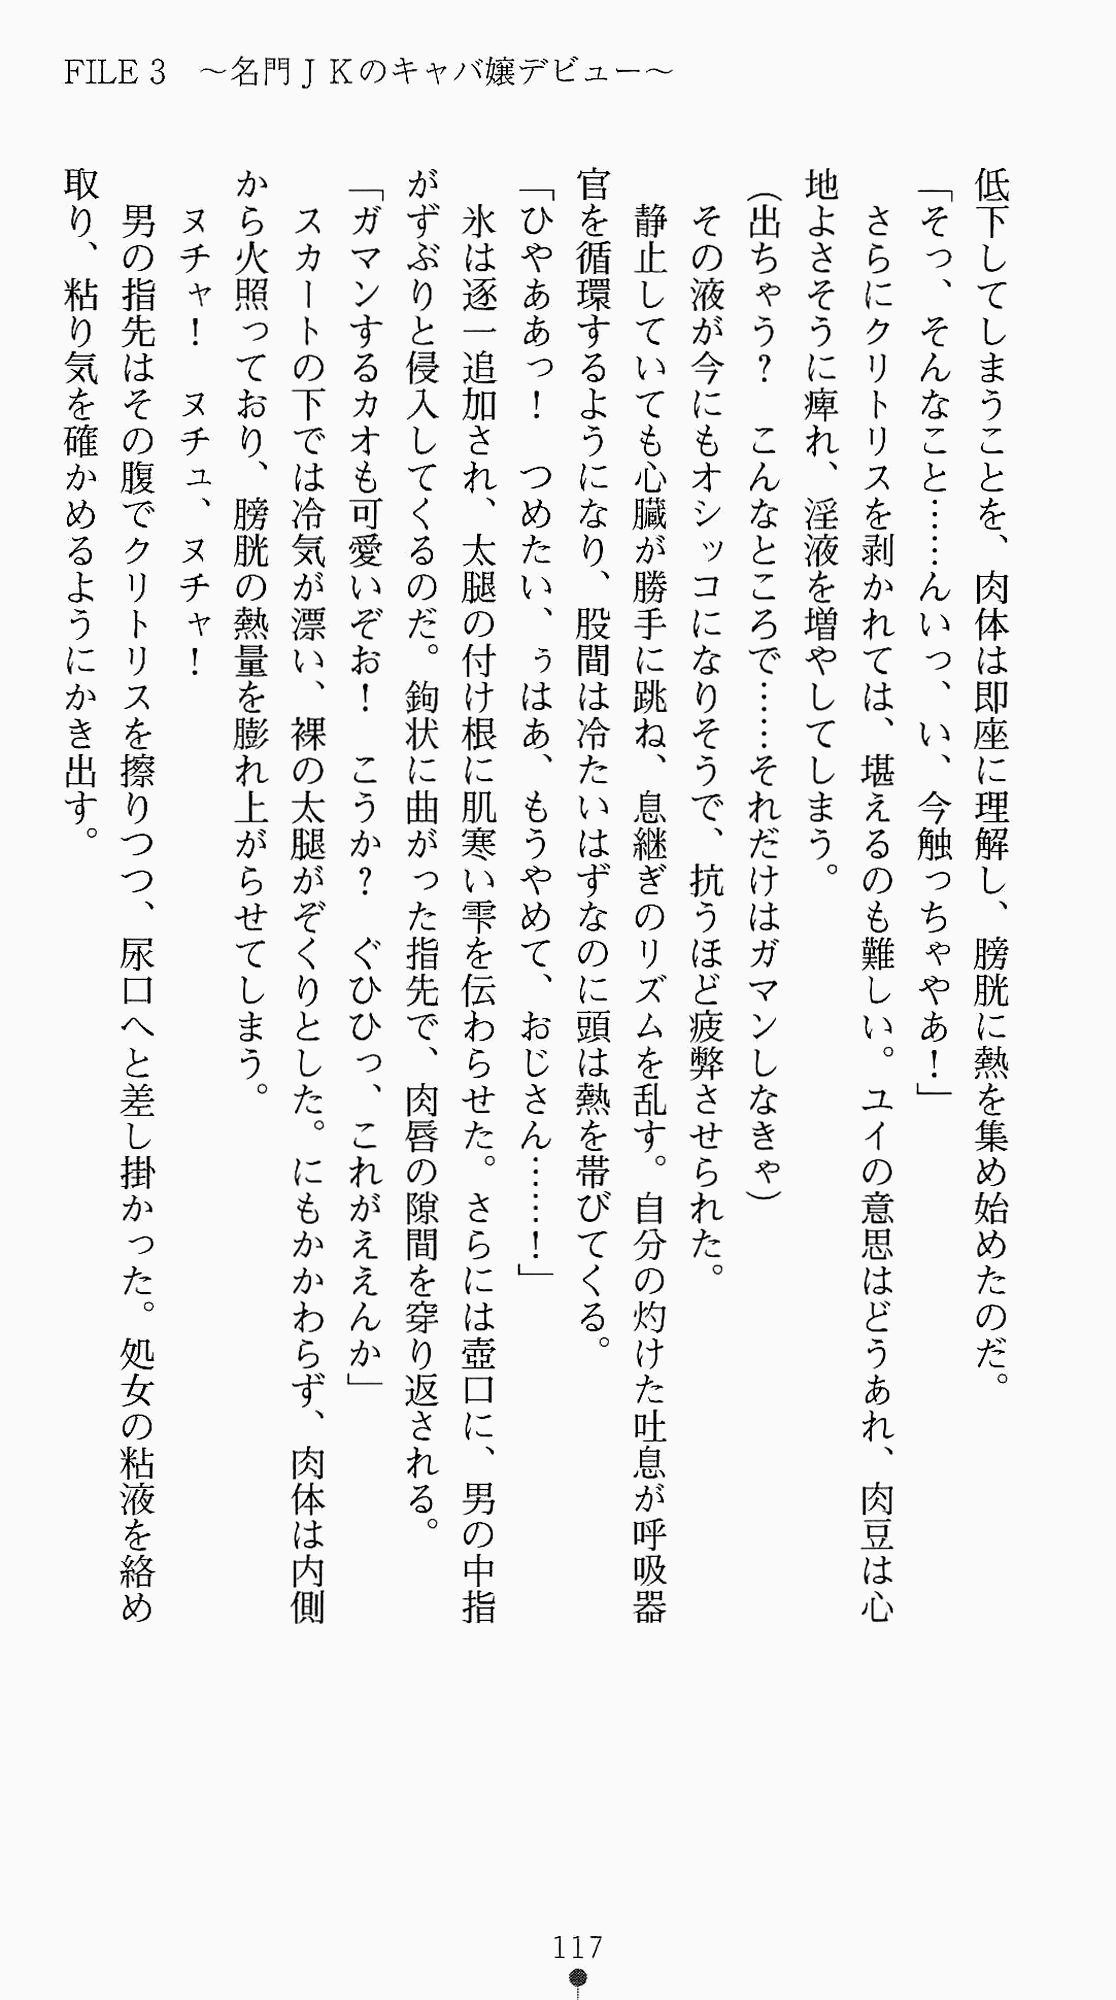 [Kagura Youko, Takahama Tarou] Shiritsu Tantei Takasuga Erika no Jikenbo 2 - Chijouha AV Satsuei 24-ji 132